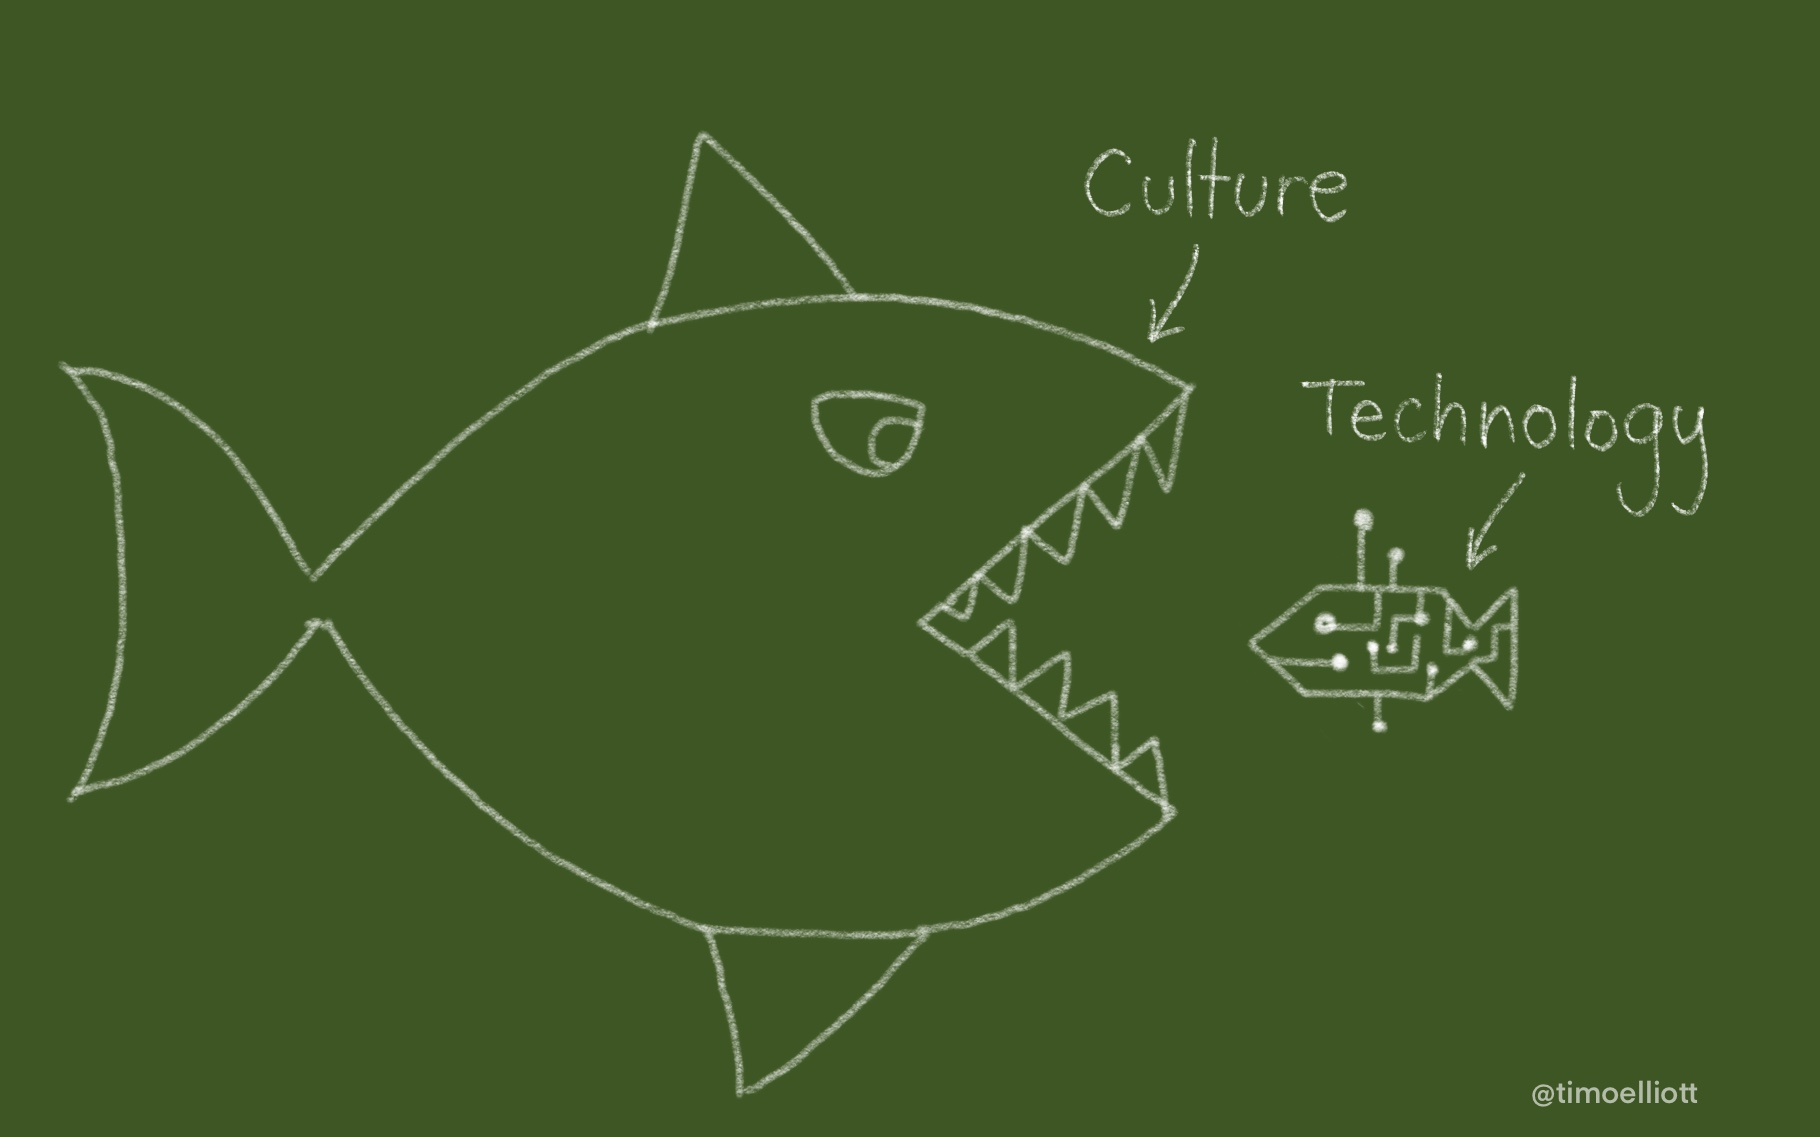 A big fish eating a robot fish -- culture eats technology